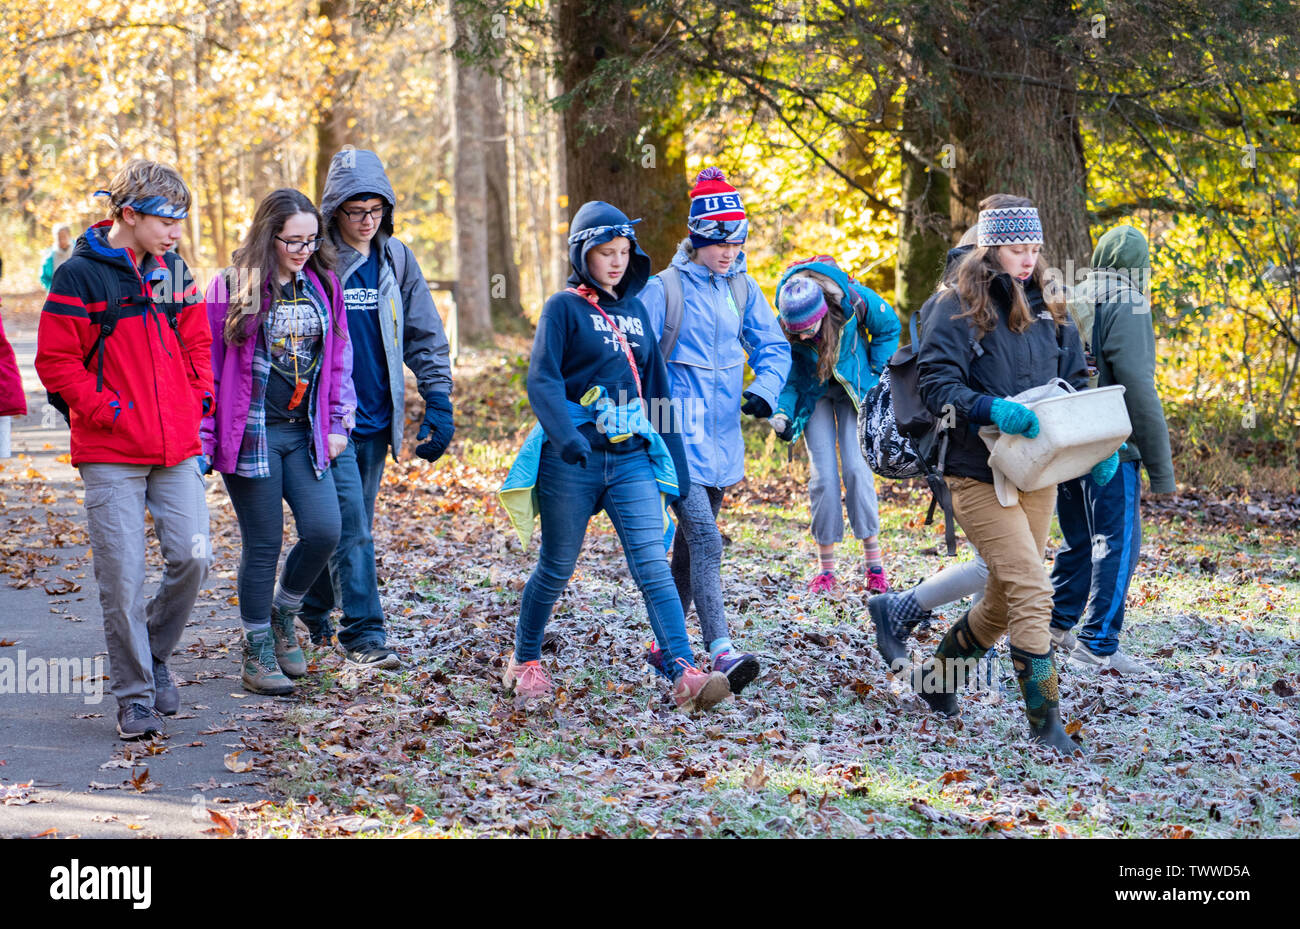 Entusiasmado grupo de adolescentes caminando por un sendero con abrigos y chaquetas en una helada mañana en el Parque Nacional Great Smoky Mountains National Park. Foto de stock